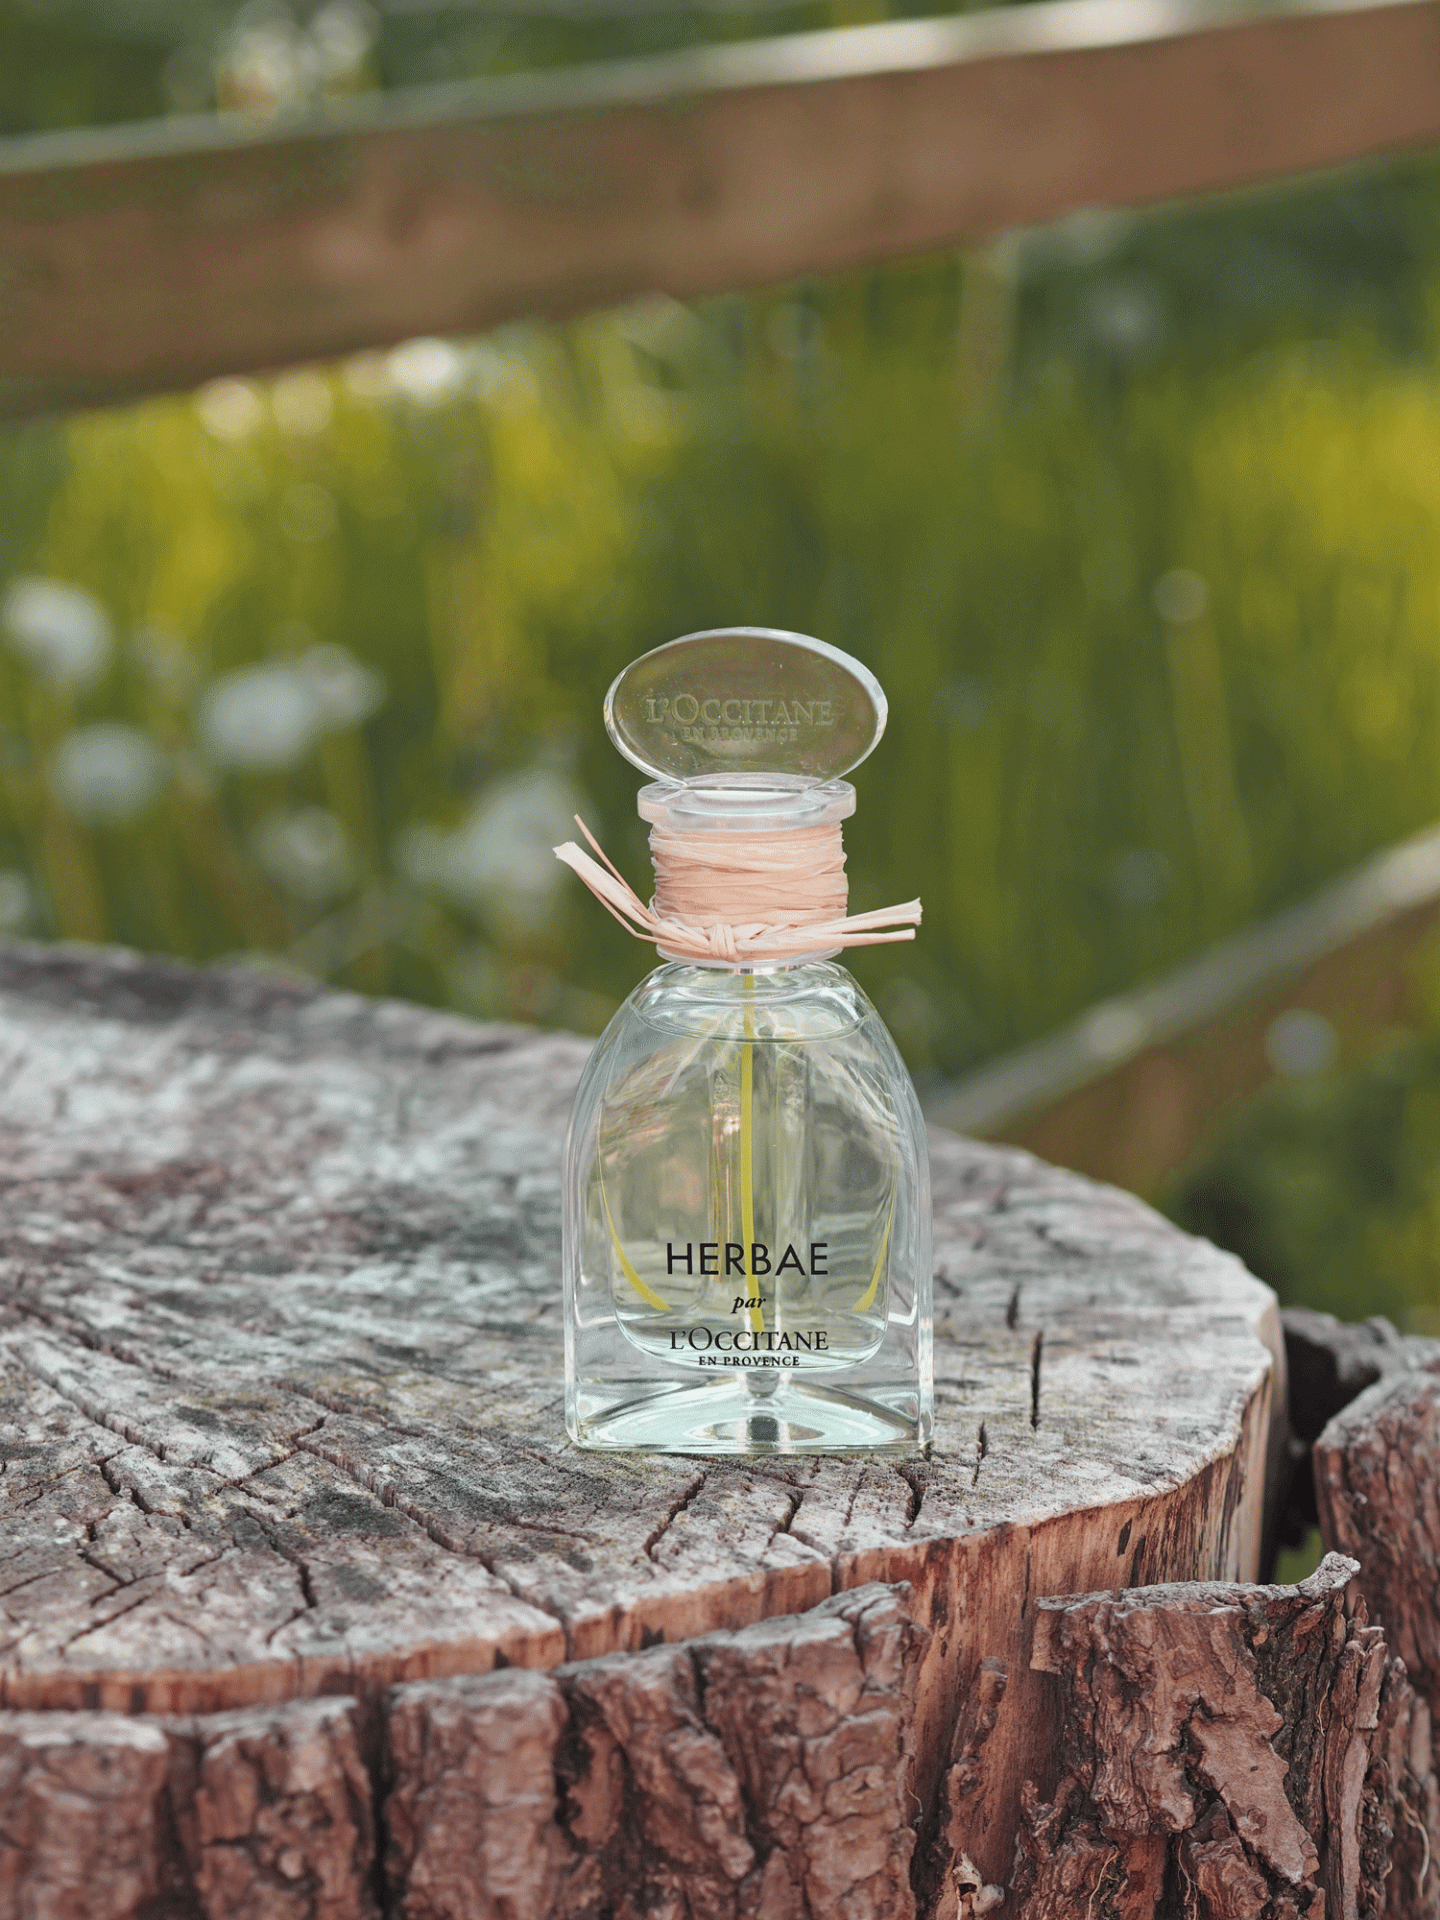 Herbae par l'occitane eau de parfum